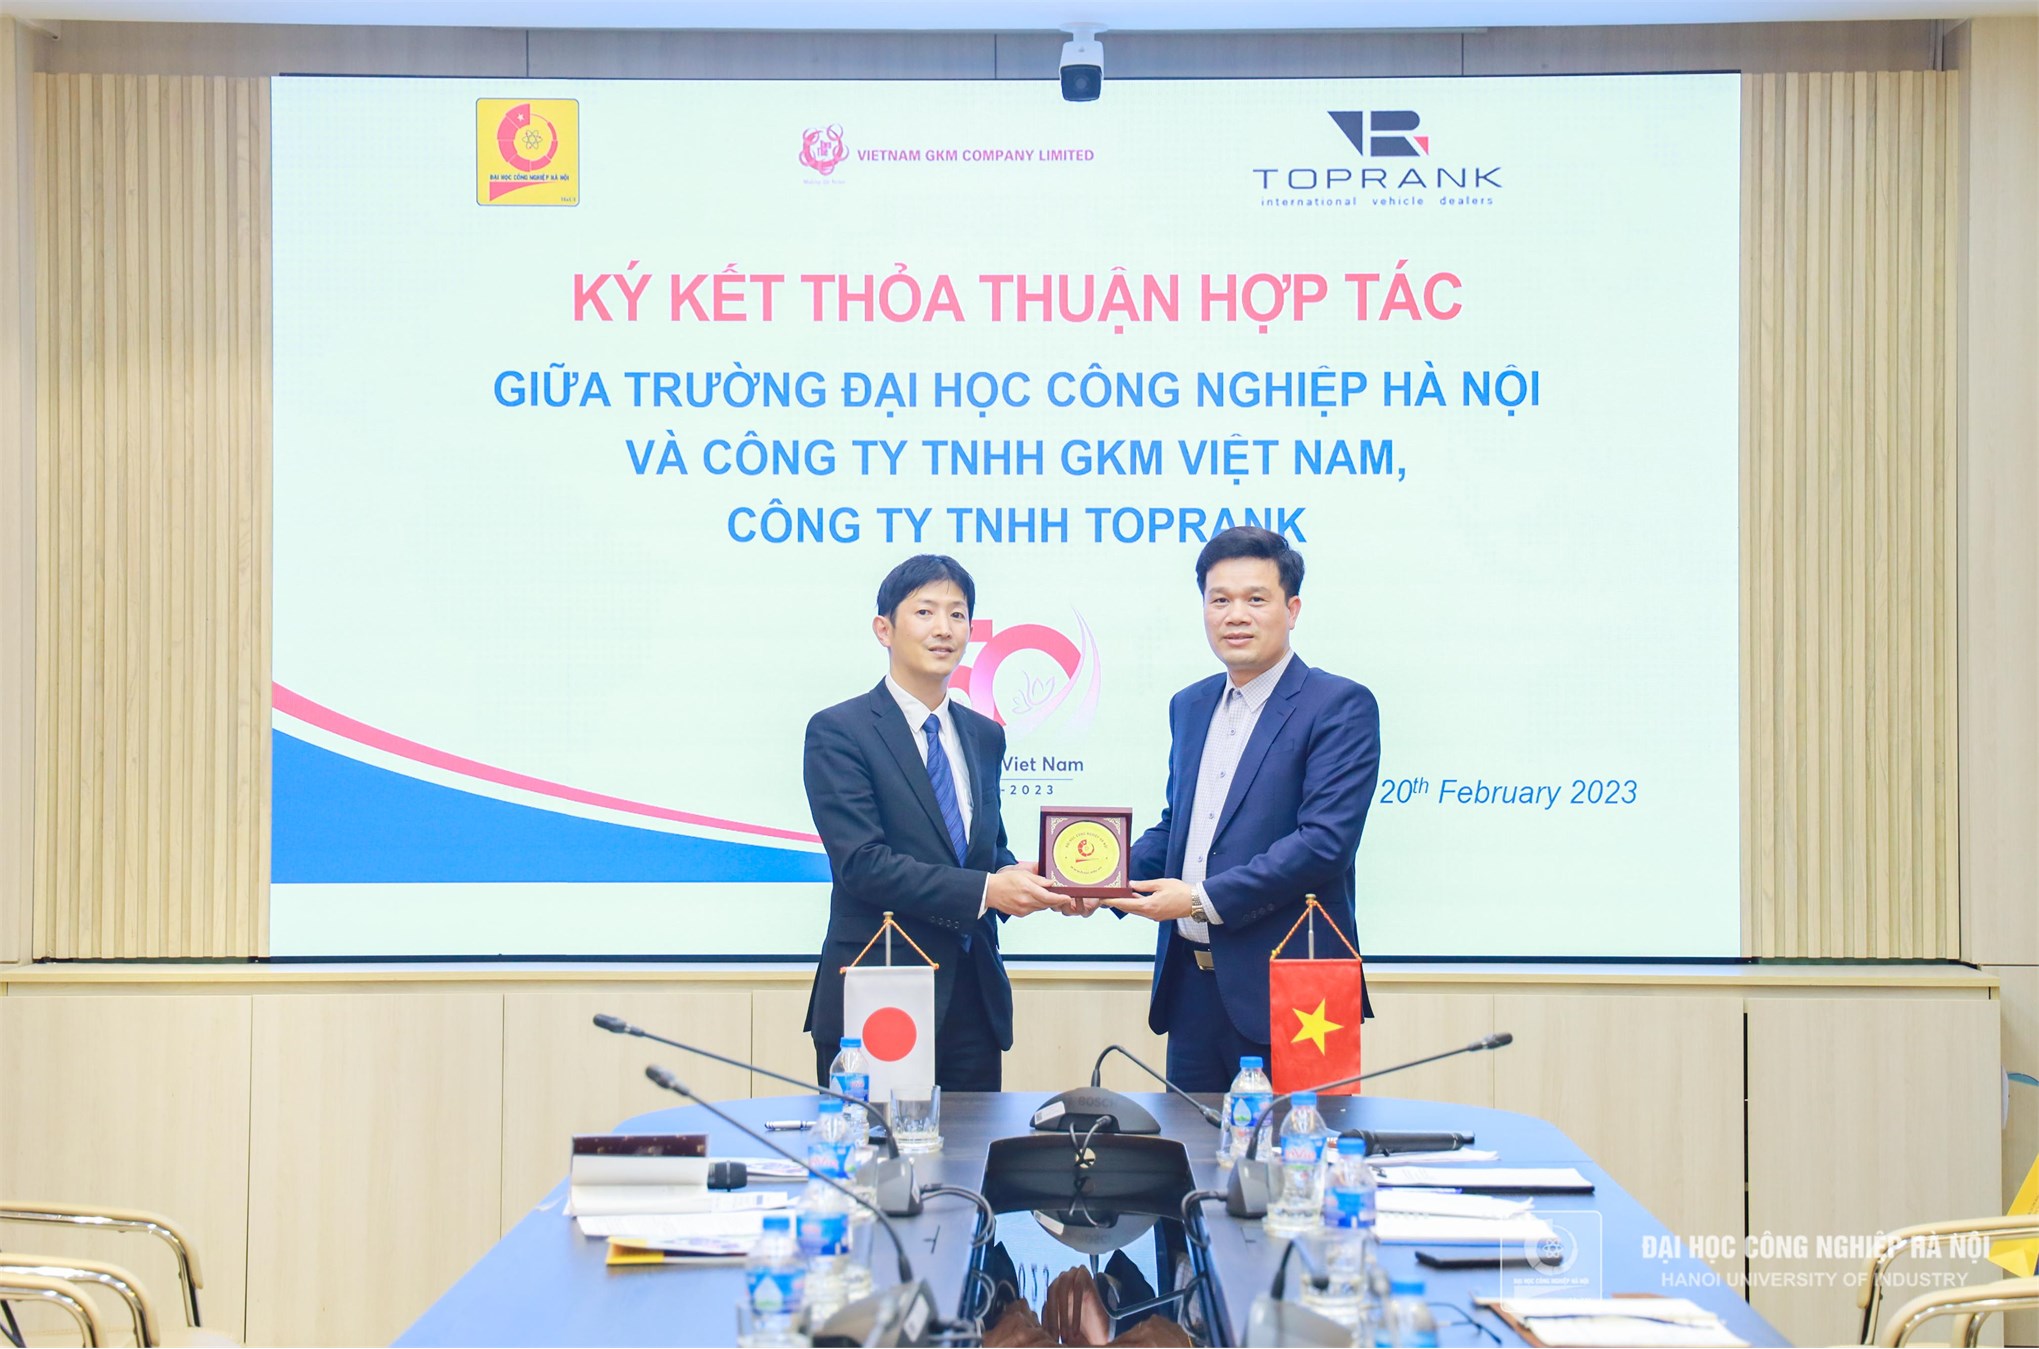 Phát triển nguồn nhân lực cho ngành dịch vụ sửa chữa bảo dưỡng ô tô tại Việt Nam và Nhật Bản